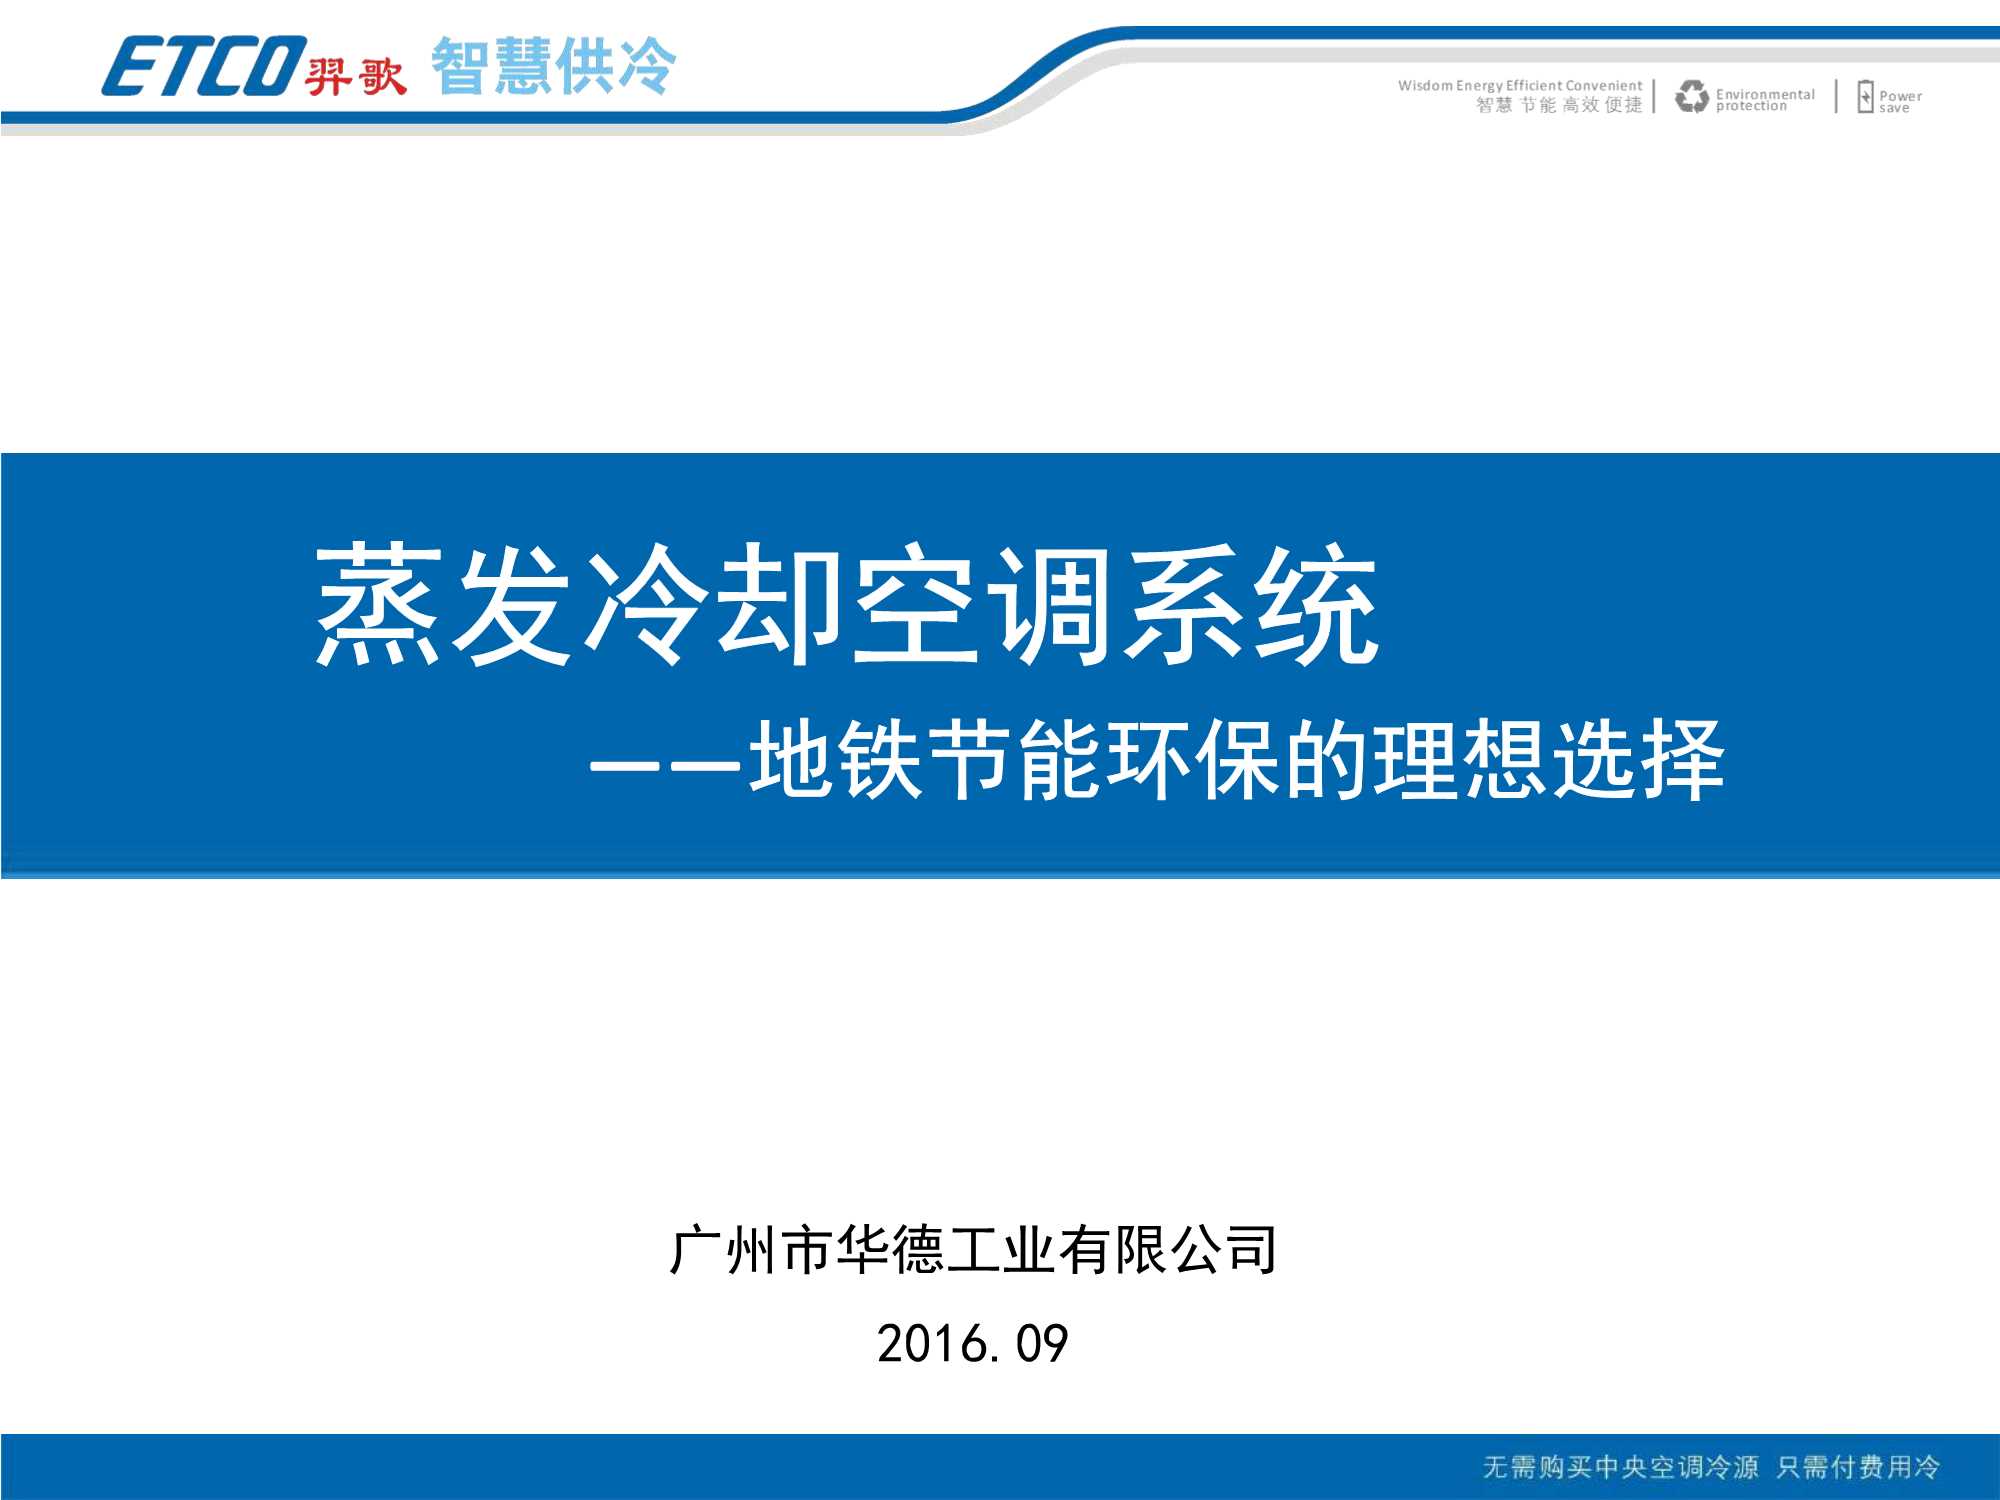 广州华德-蒸发冷却空调系统地铁节能环保的理想选择-2016.09-29页